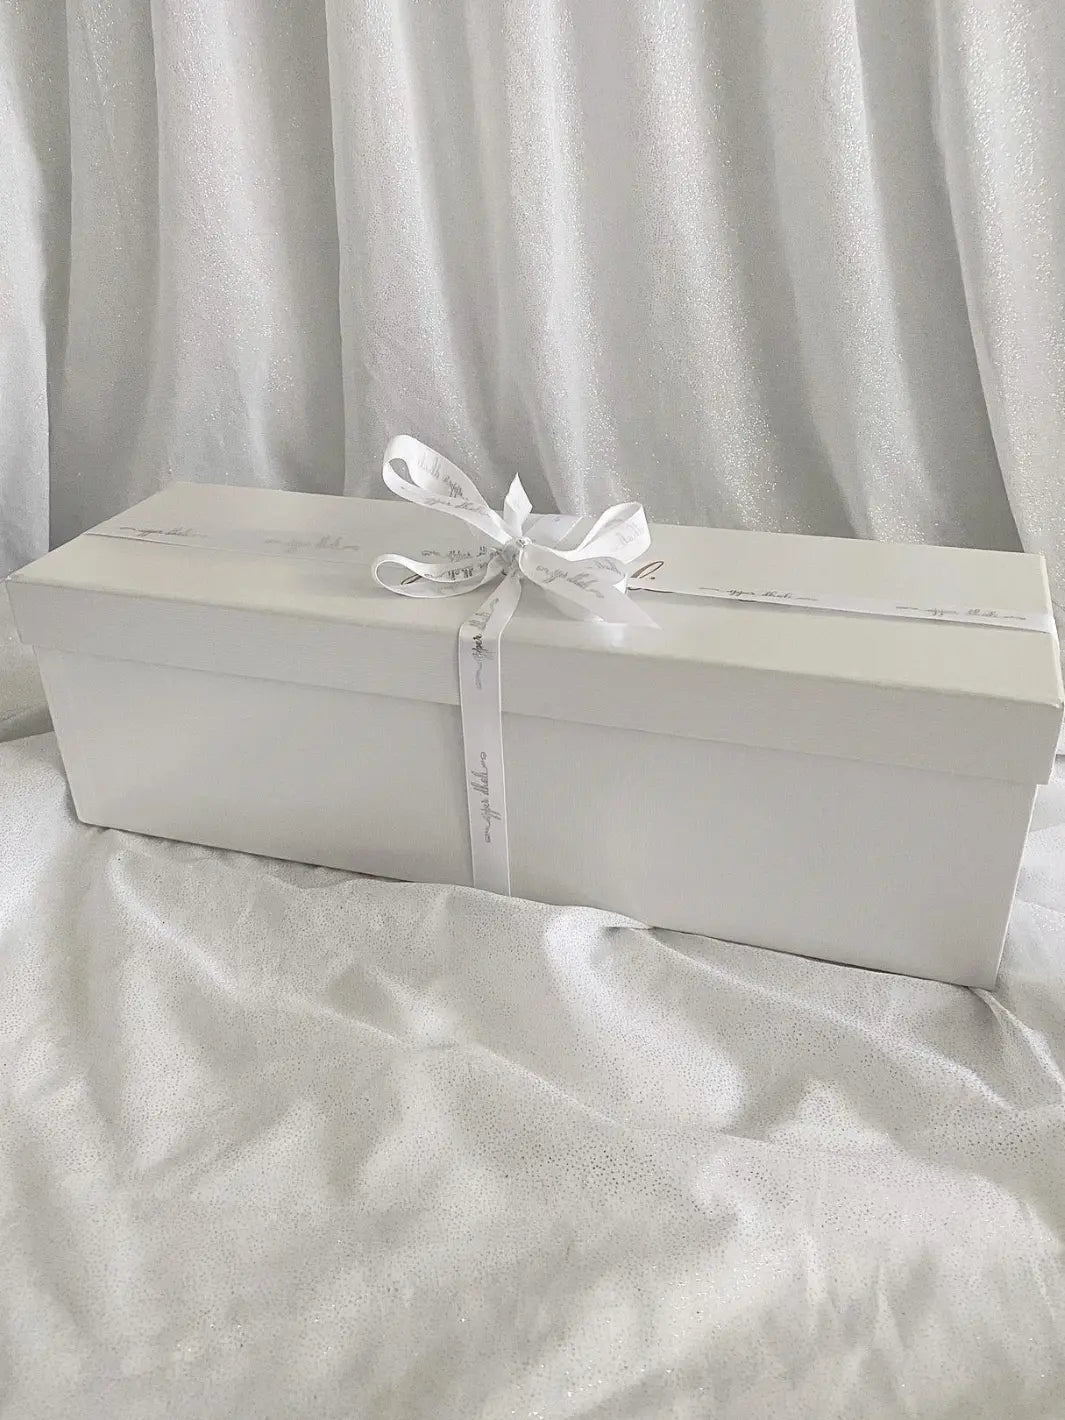 full length image of white gifting box with gold logo & white satin ribbon for Upper Dhali handmade dolls